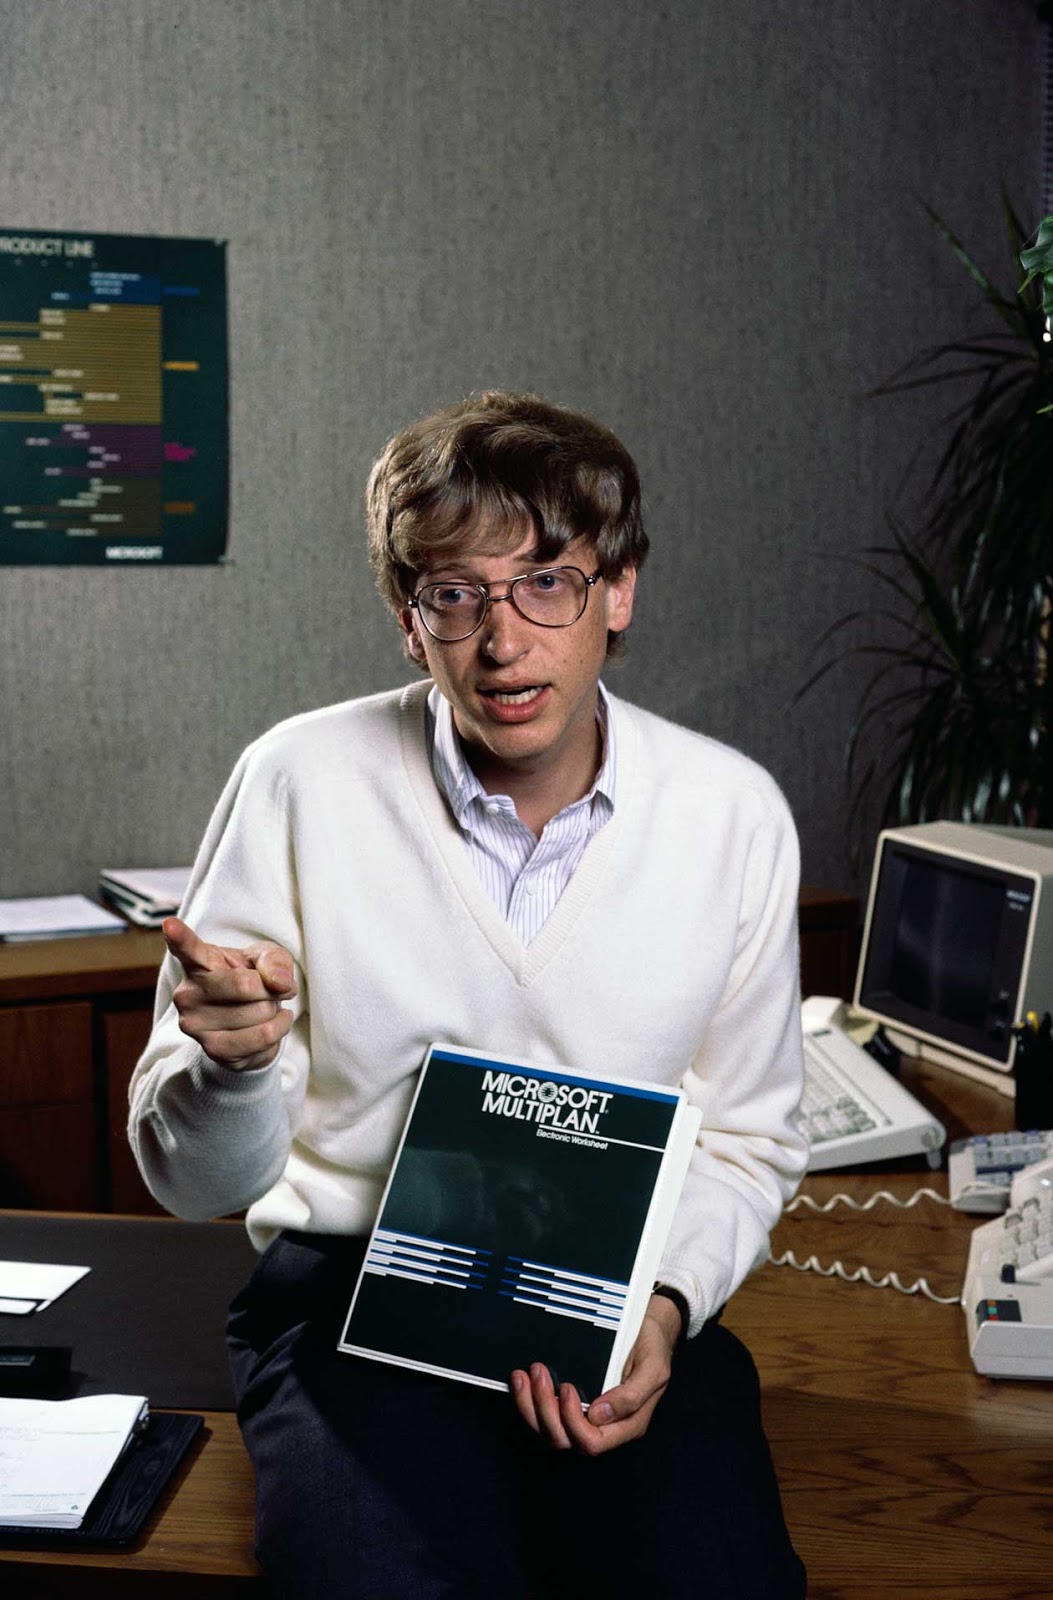 比尔盖茨:1975年微软诞生史-bilibili(B站)无水印视频解析——YIUIOS易柚斯